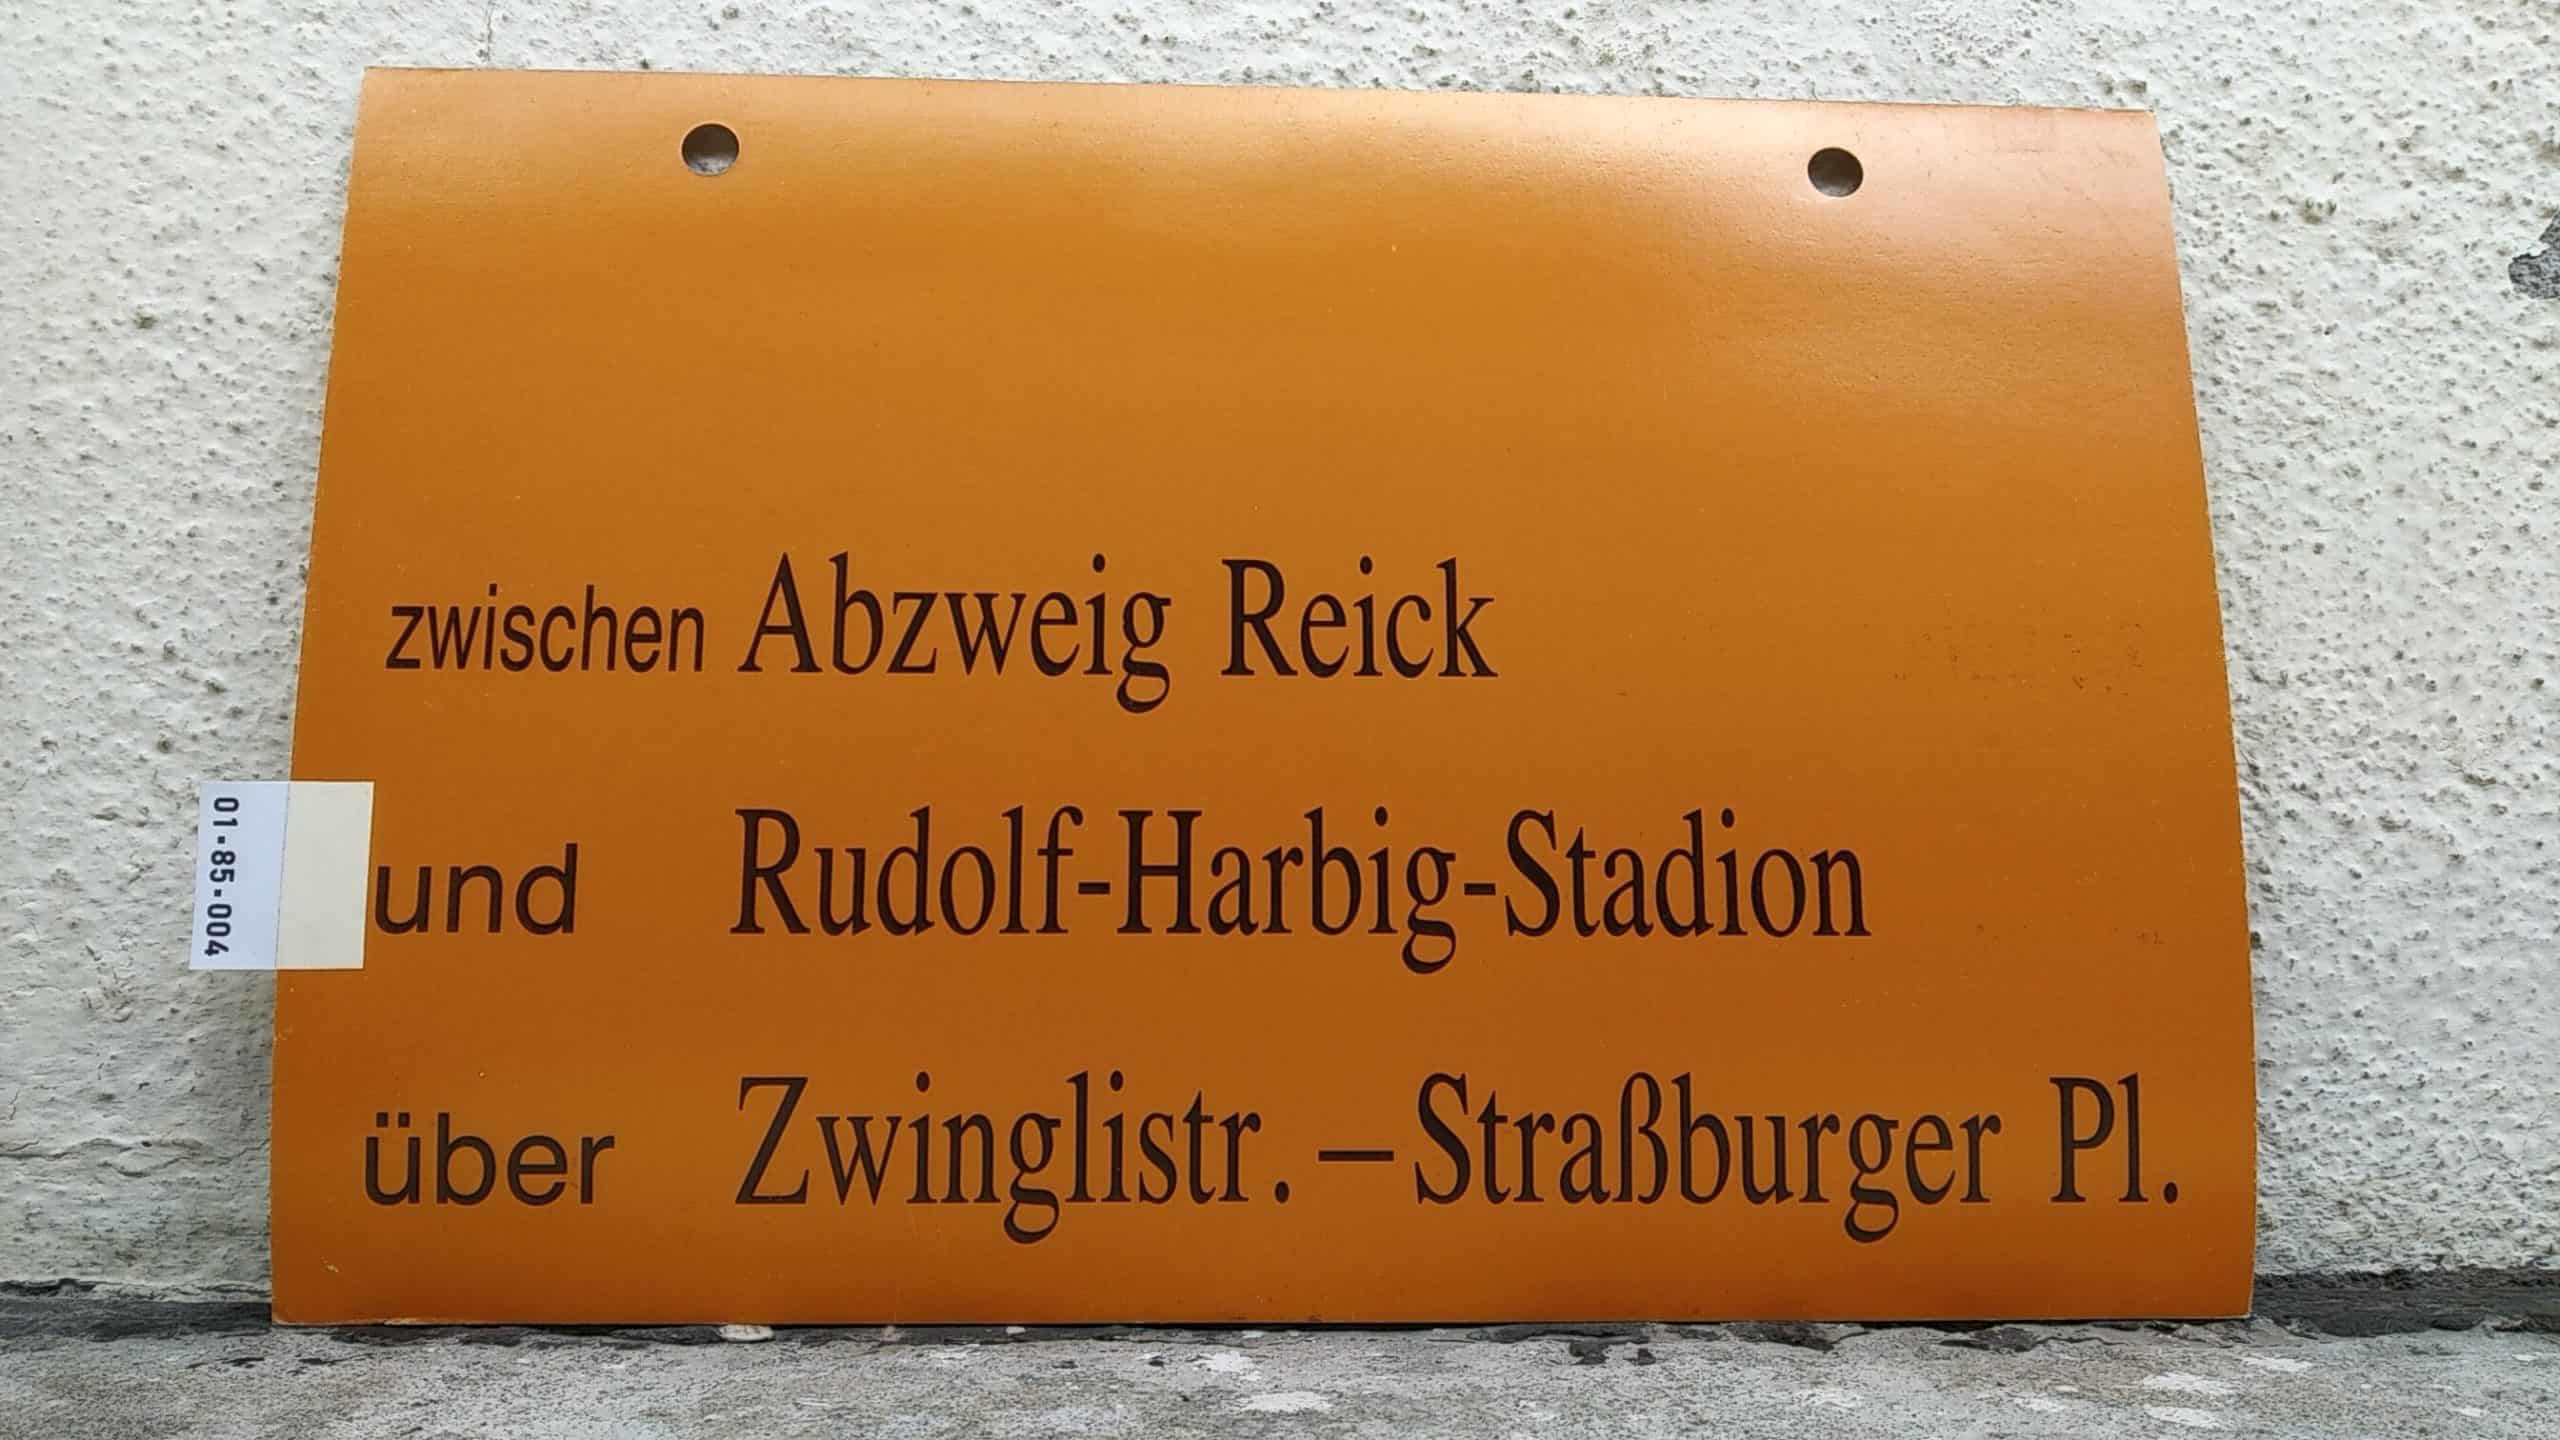 Ein seltenes Straßenbahn-Umleitungsschild aus Dresden: zwischen Abzweig Reick und Rudolf-Harbig-Stadion über Zwinglistr.-Straßburger Pl.